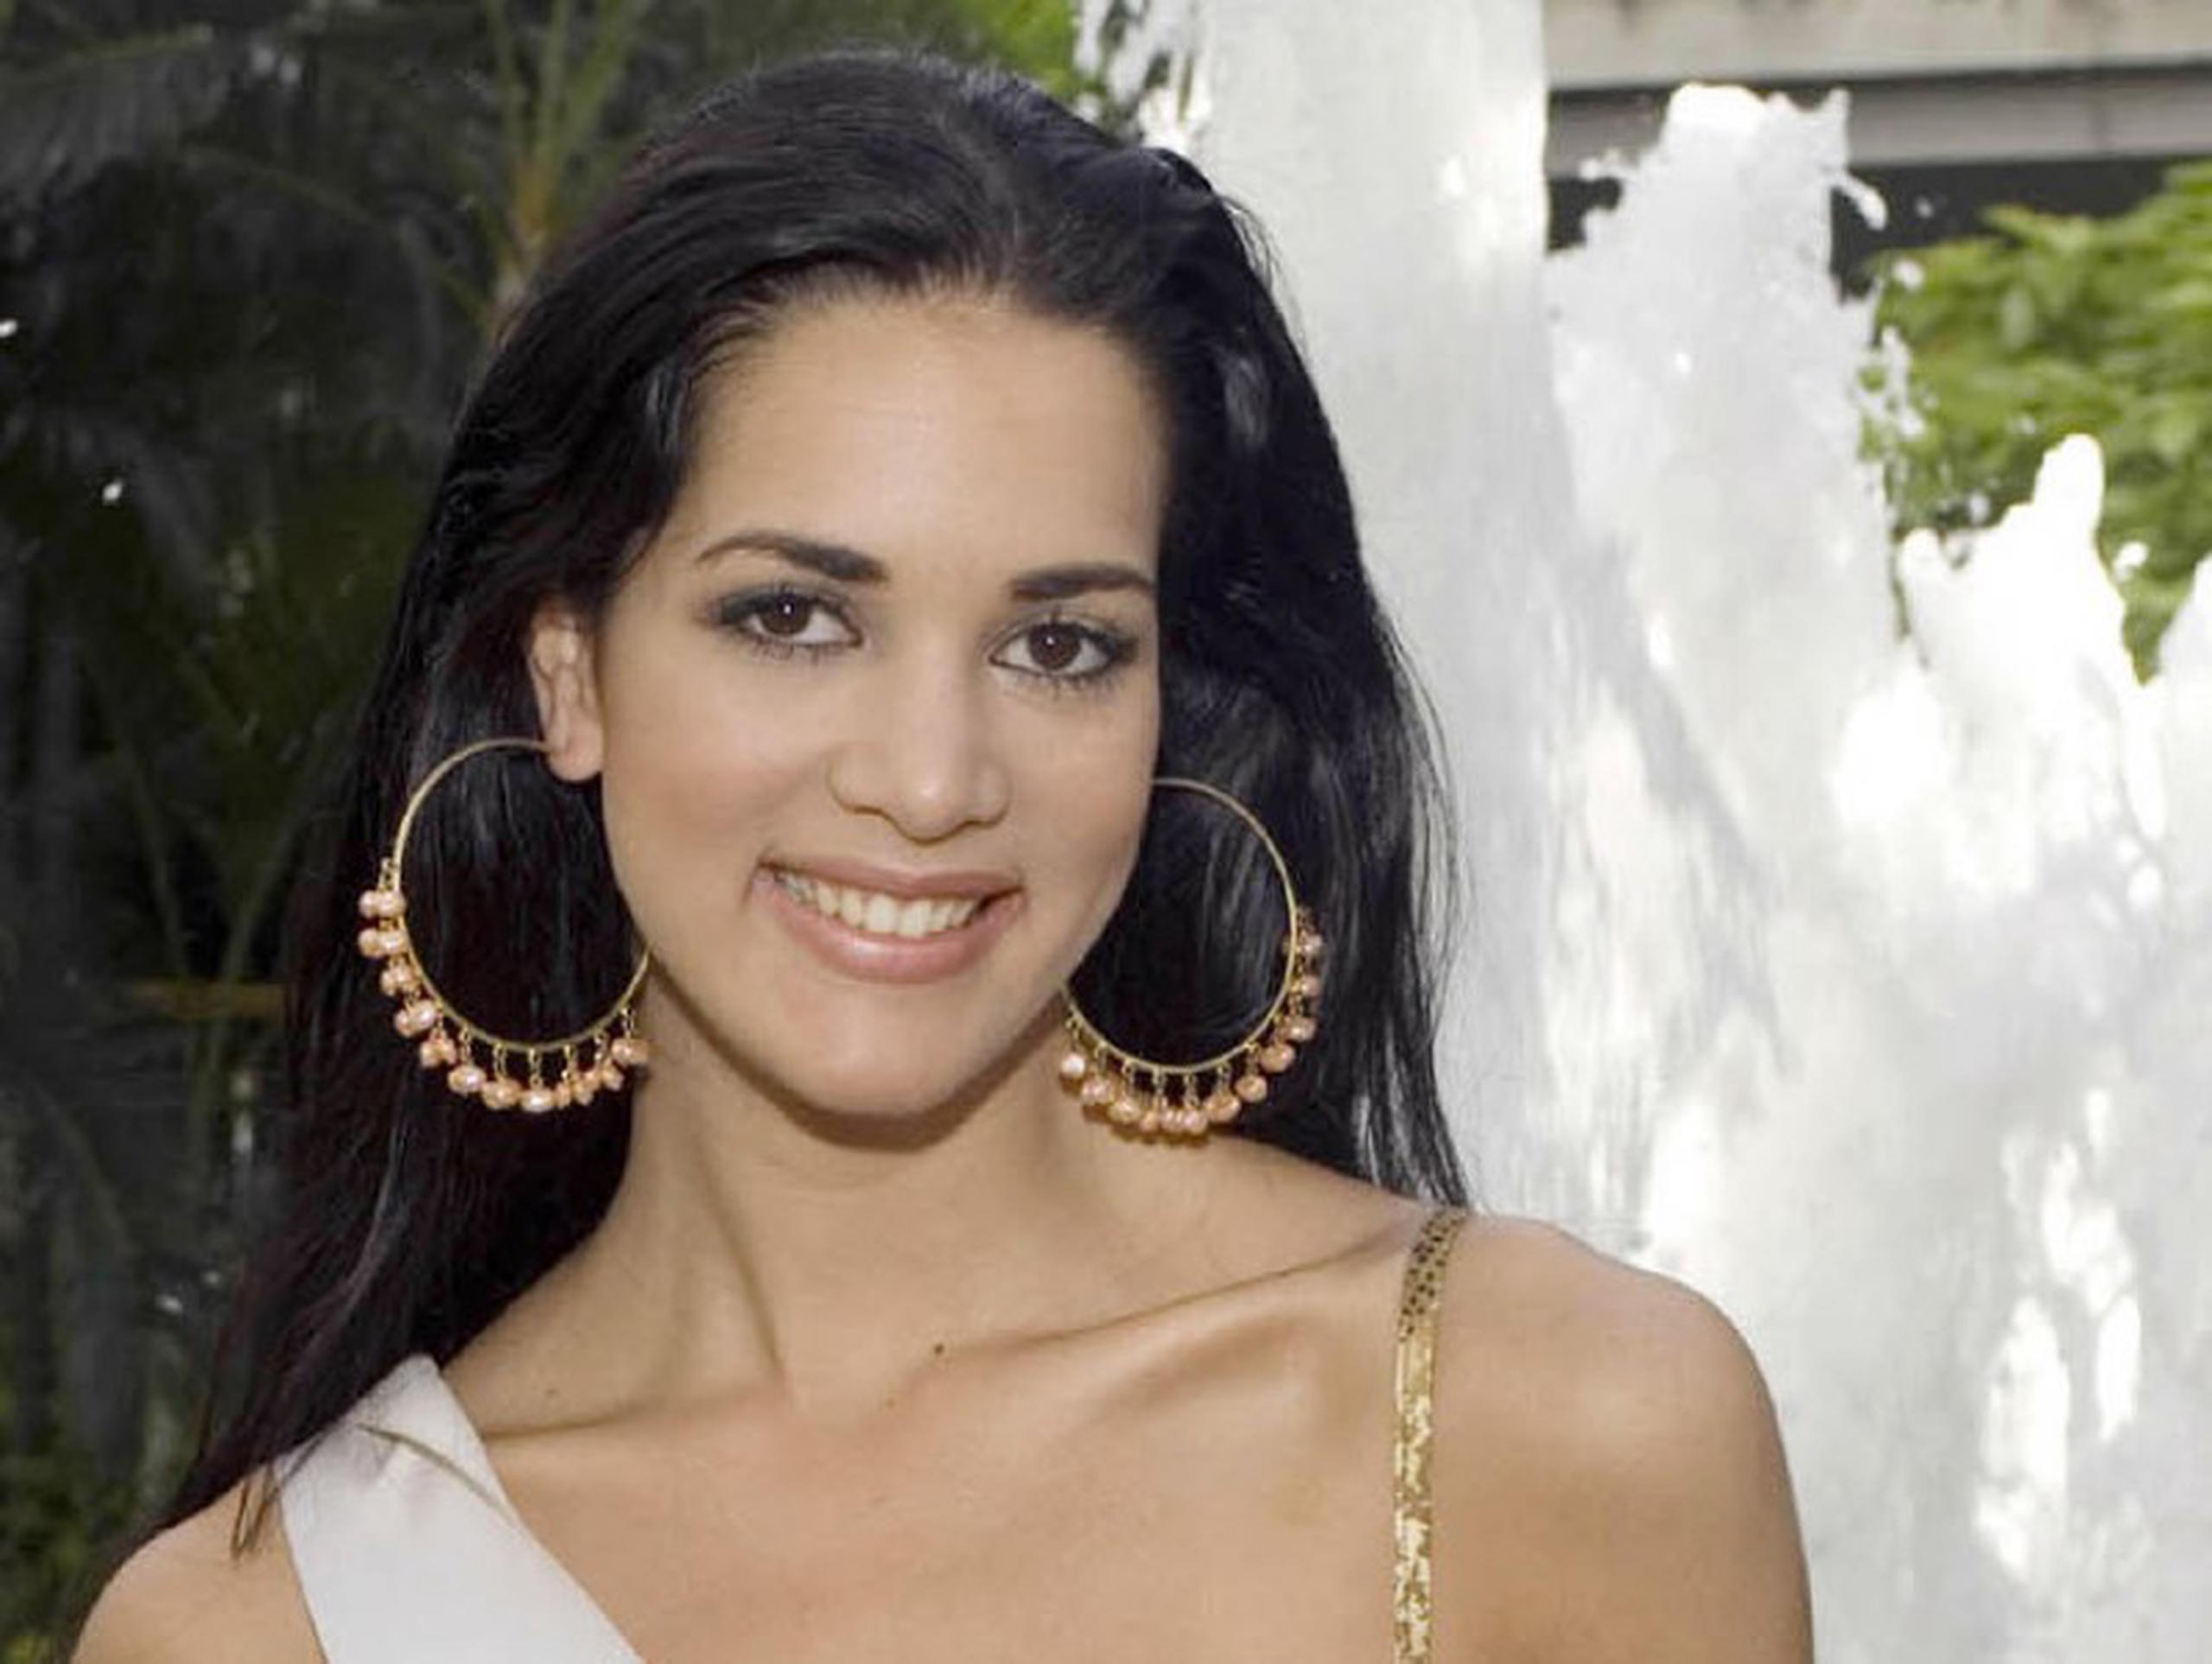 El asesinato de la ex Miss Venezuela y actriz venezolana Mónica Spear y su exesposo conmovió al mundo entero y tuvo una gran resonancia en las redes sociales. (AP)